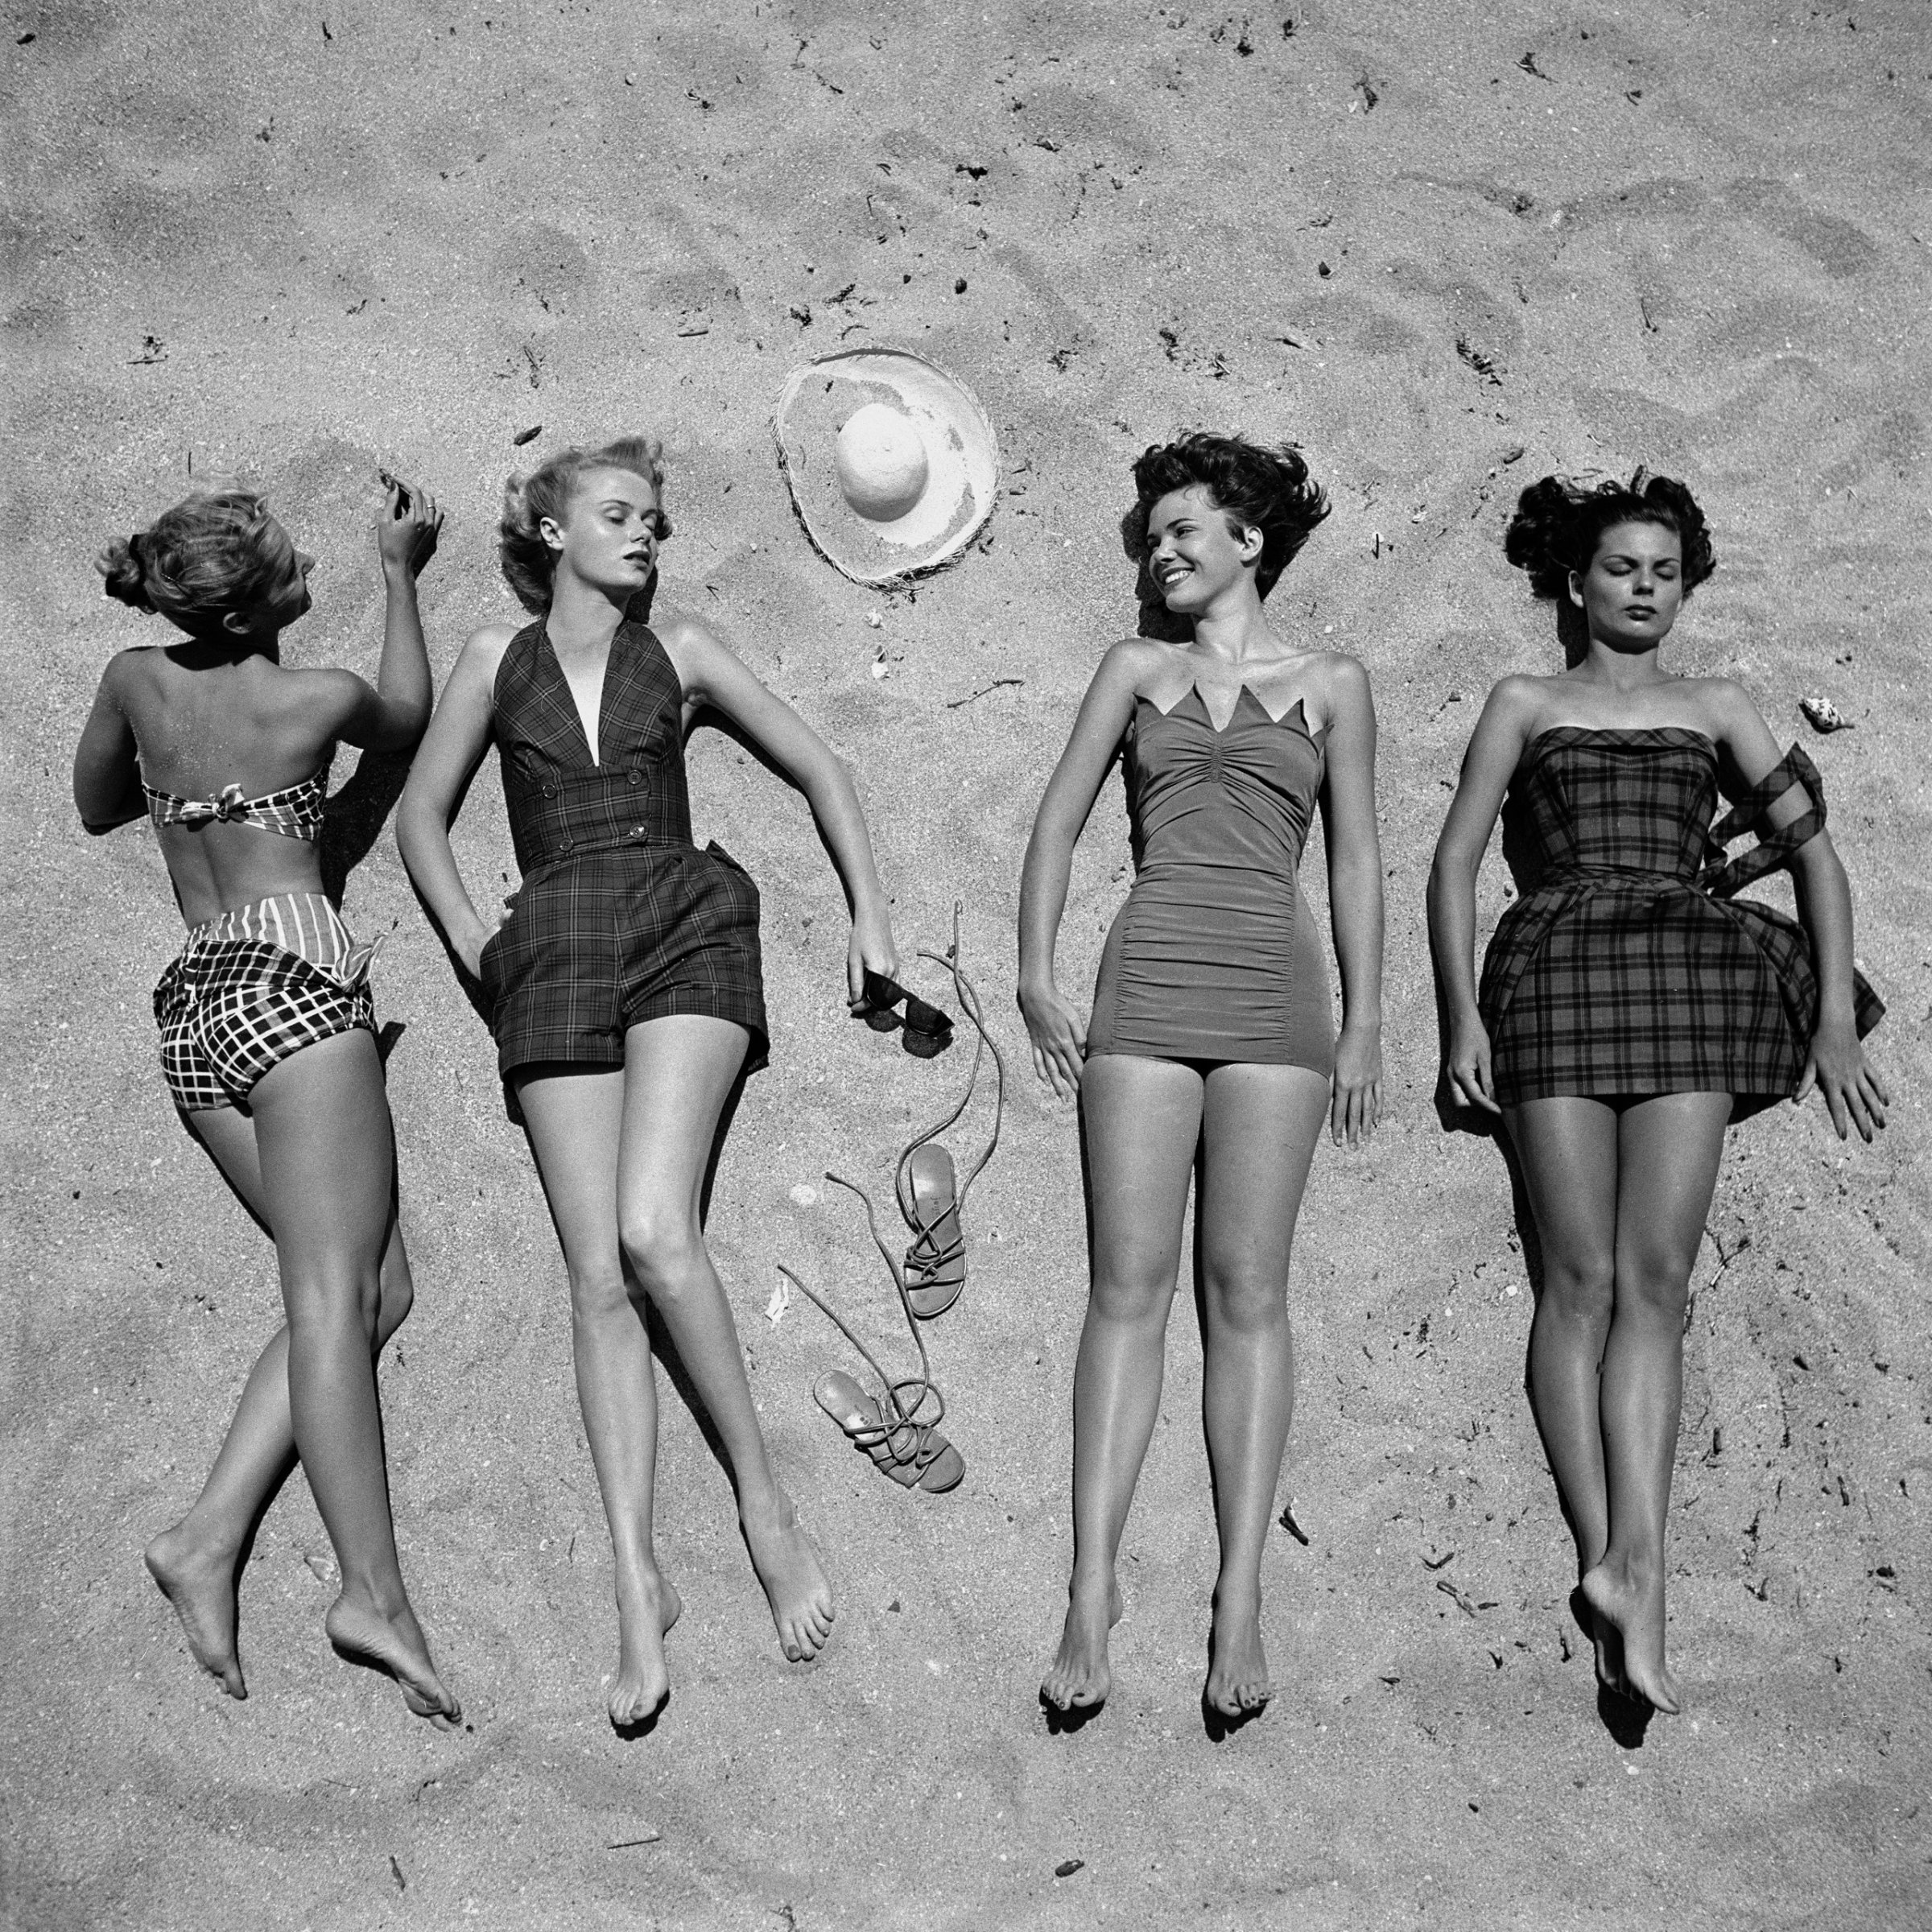 Summer beach fashions, 1950.